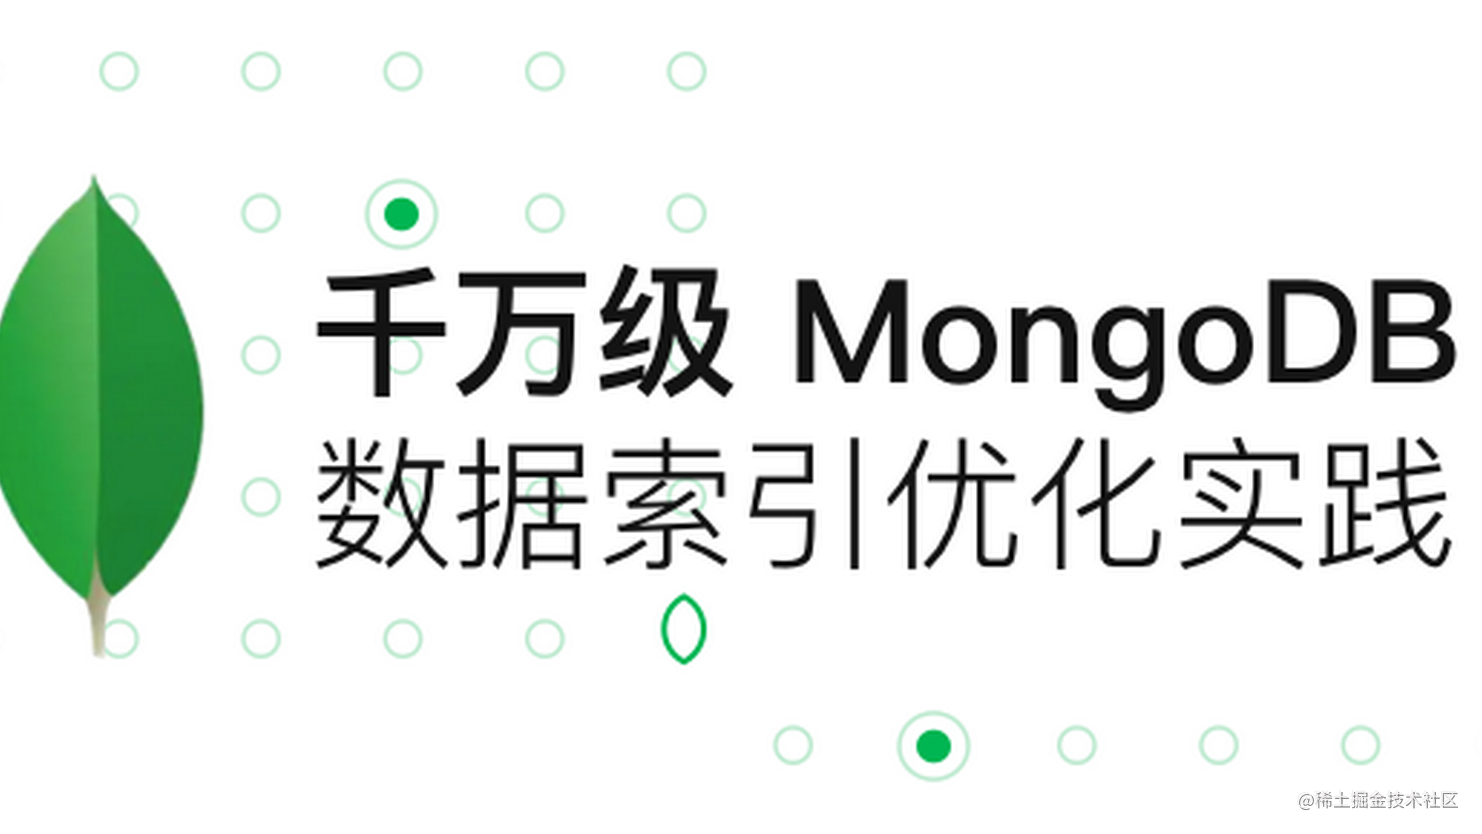 千万级 MongoDB 数据索引优化实践